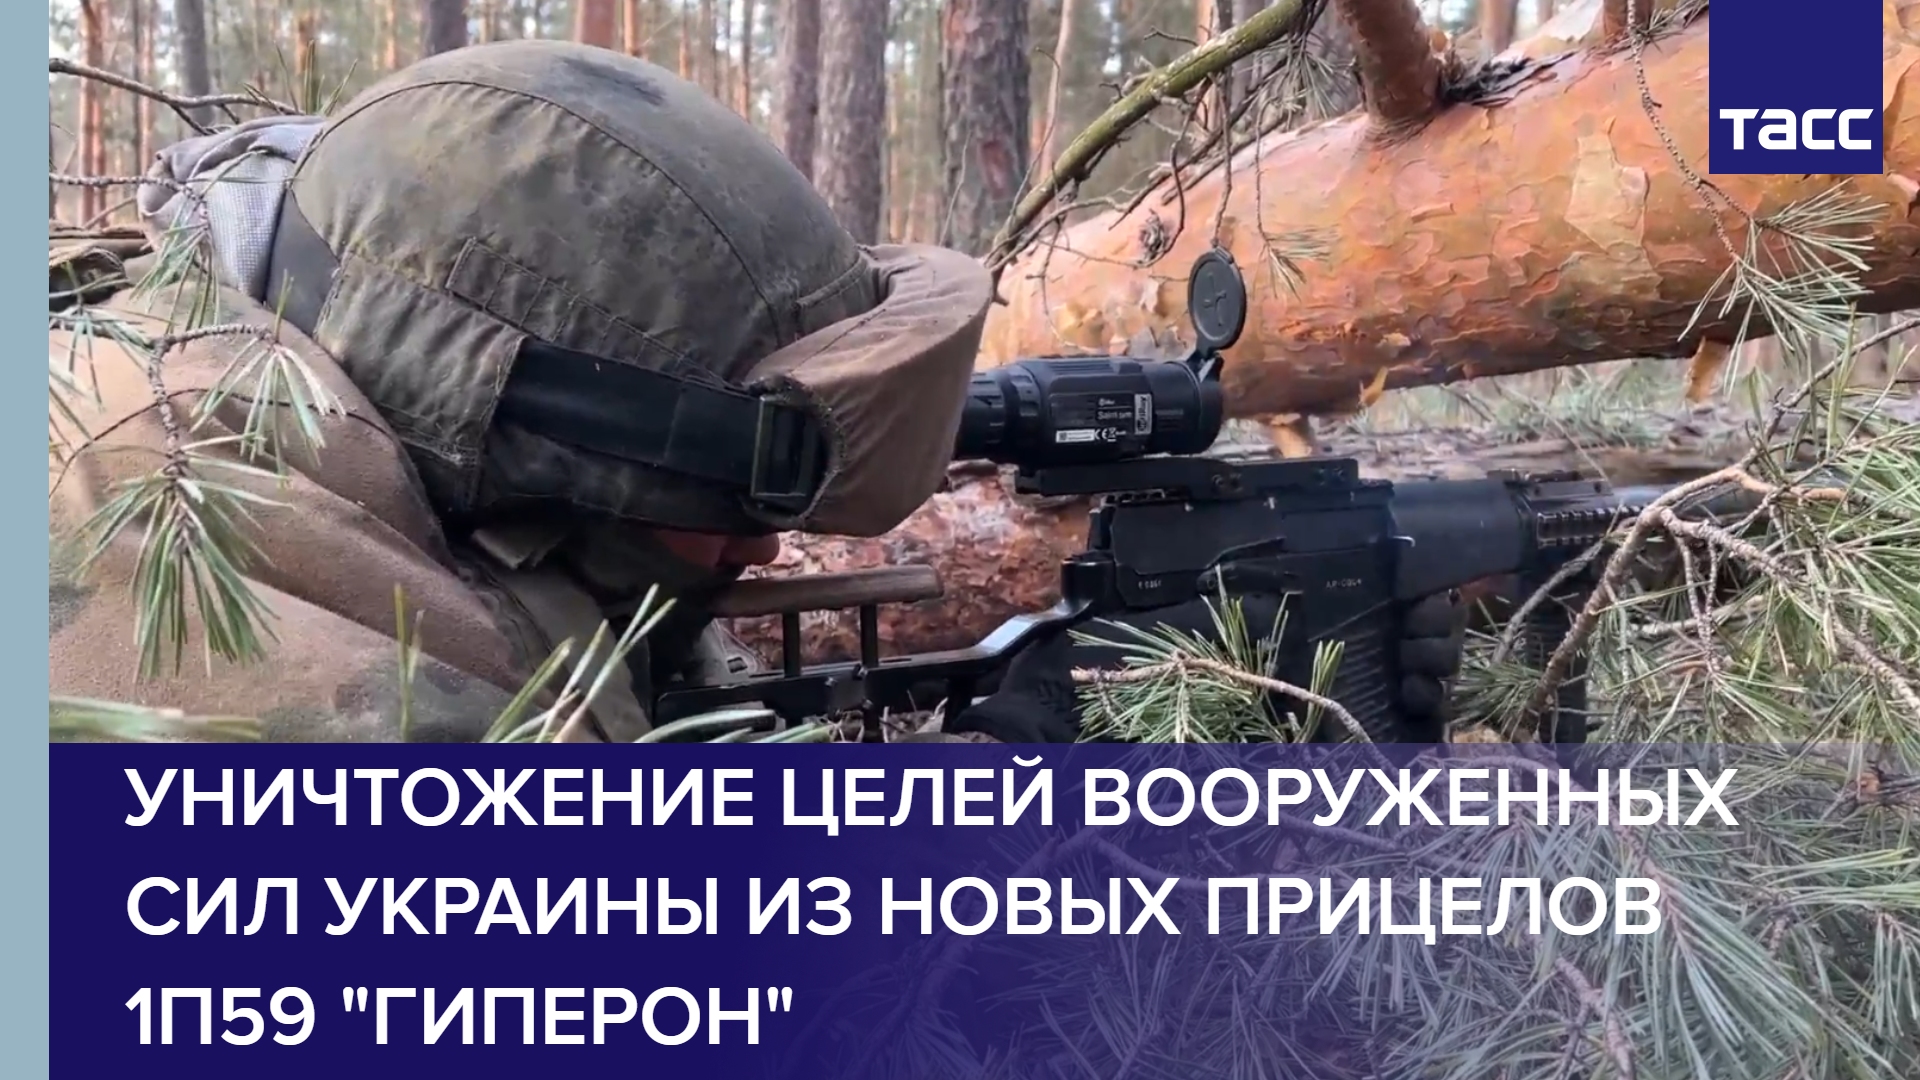 Уничтожение целей Вооруженных сил Украины из новых прицелов 1П59 "Гиперон"